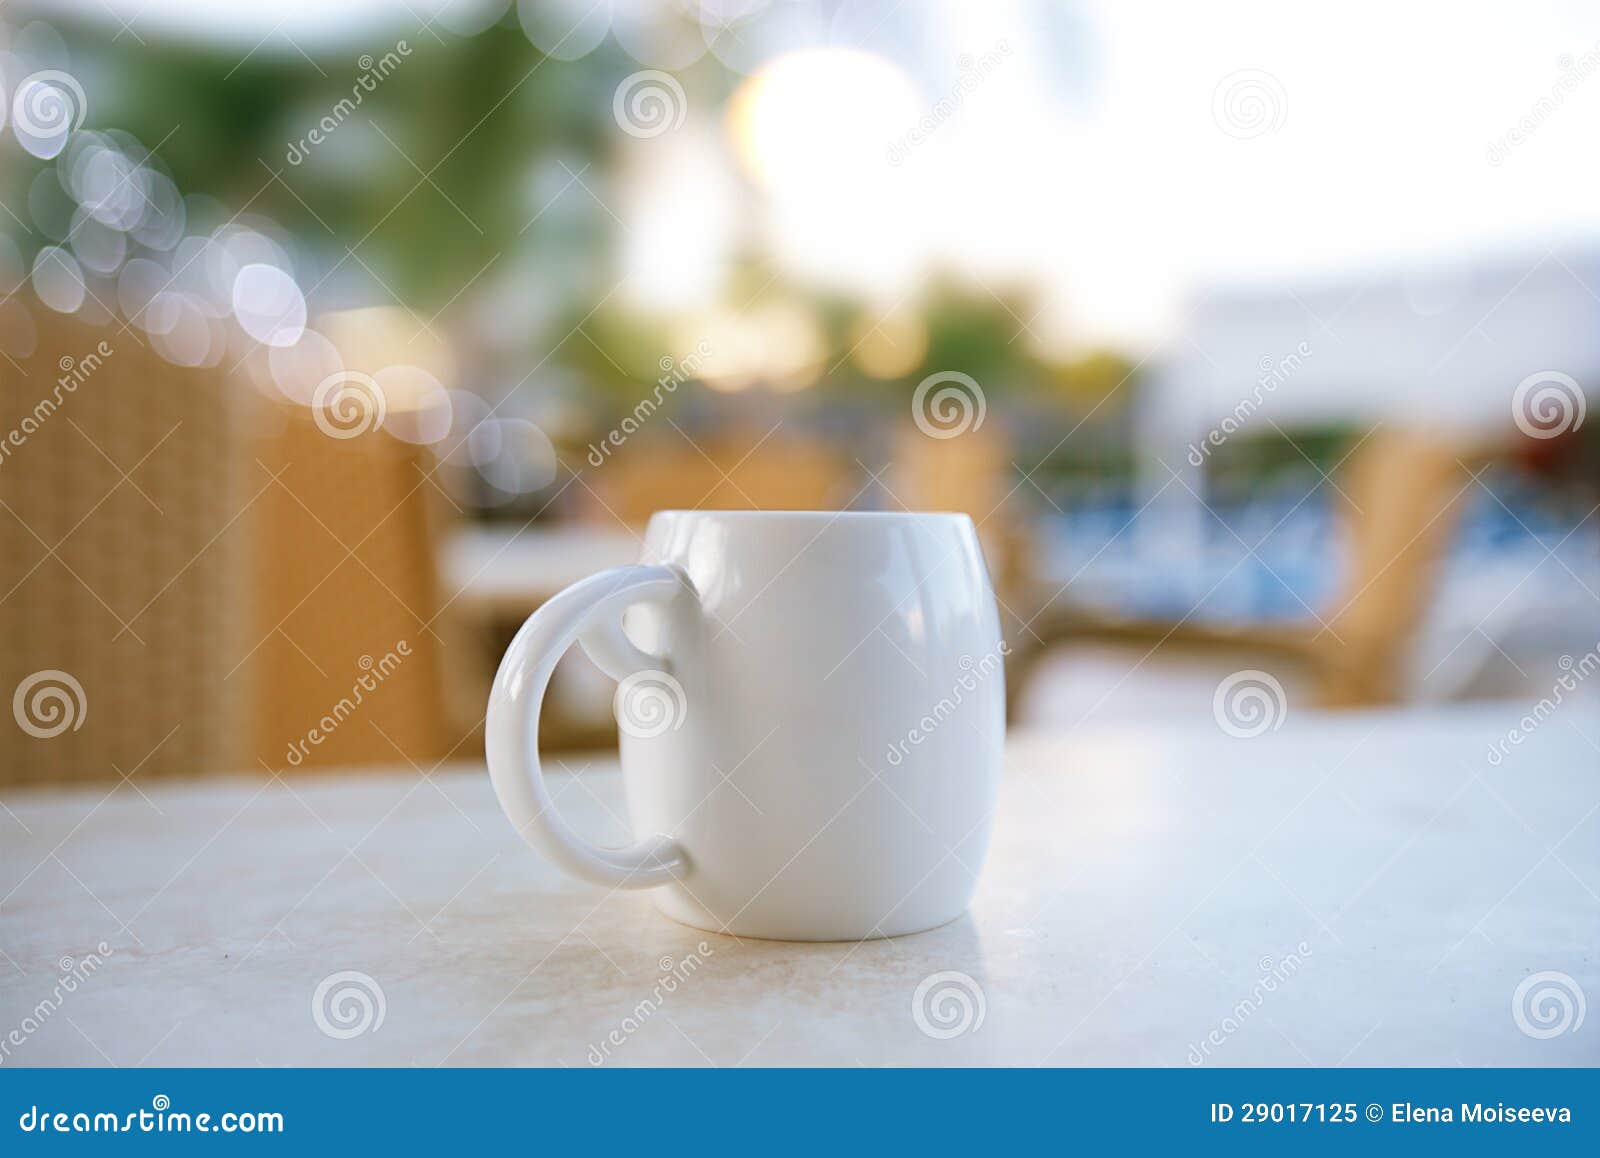 espresso coffee in white cup